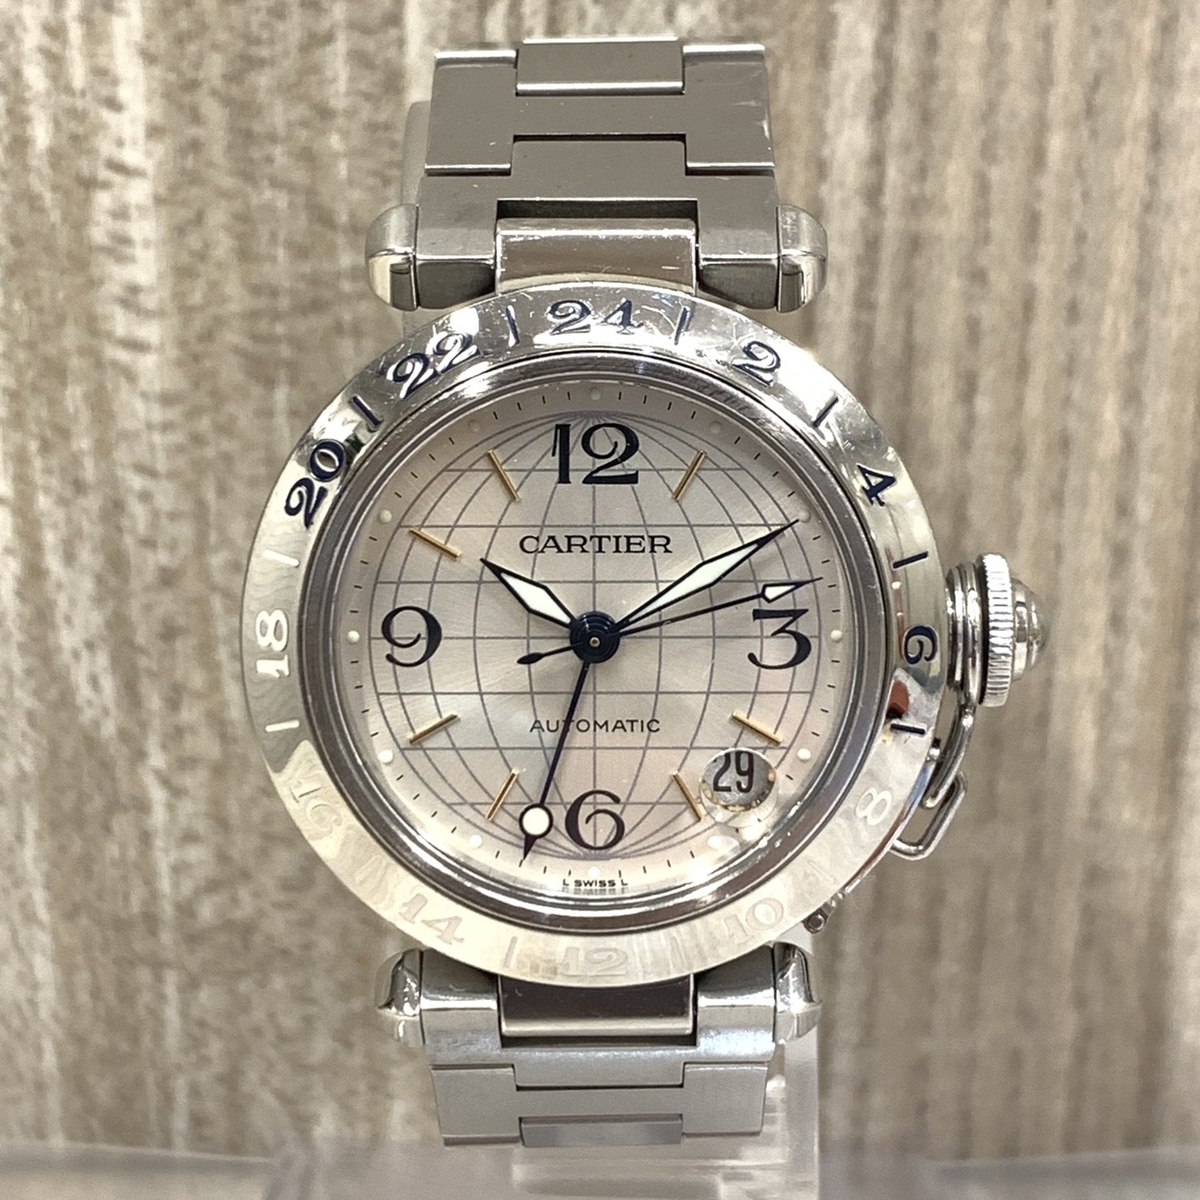 カルティエのW31029M7 パシャC GMT機能 自動巻時計の買取実績です。